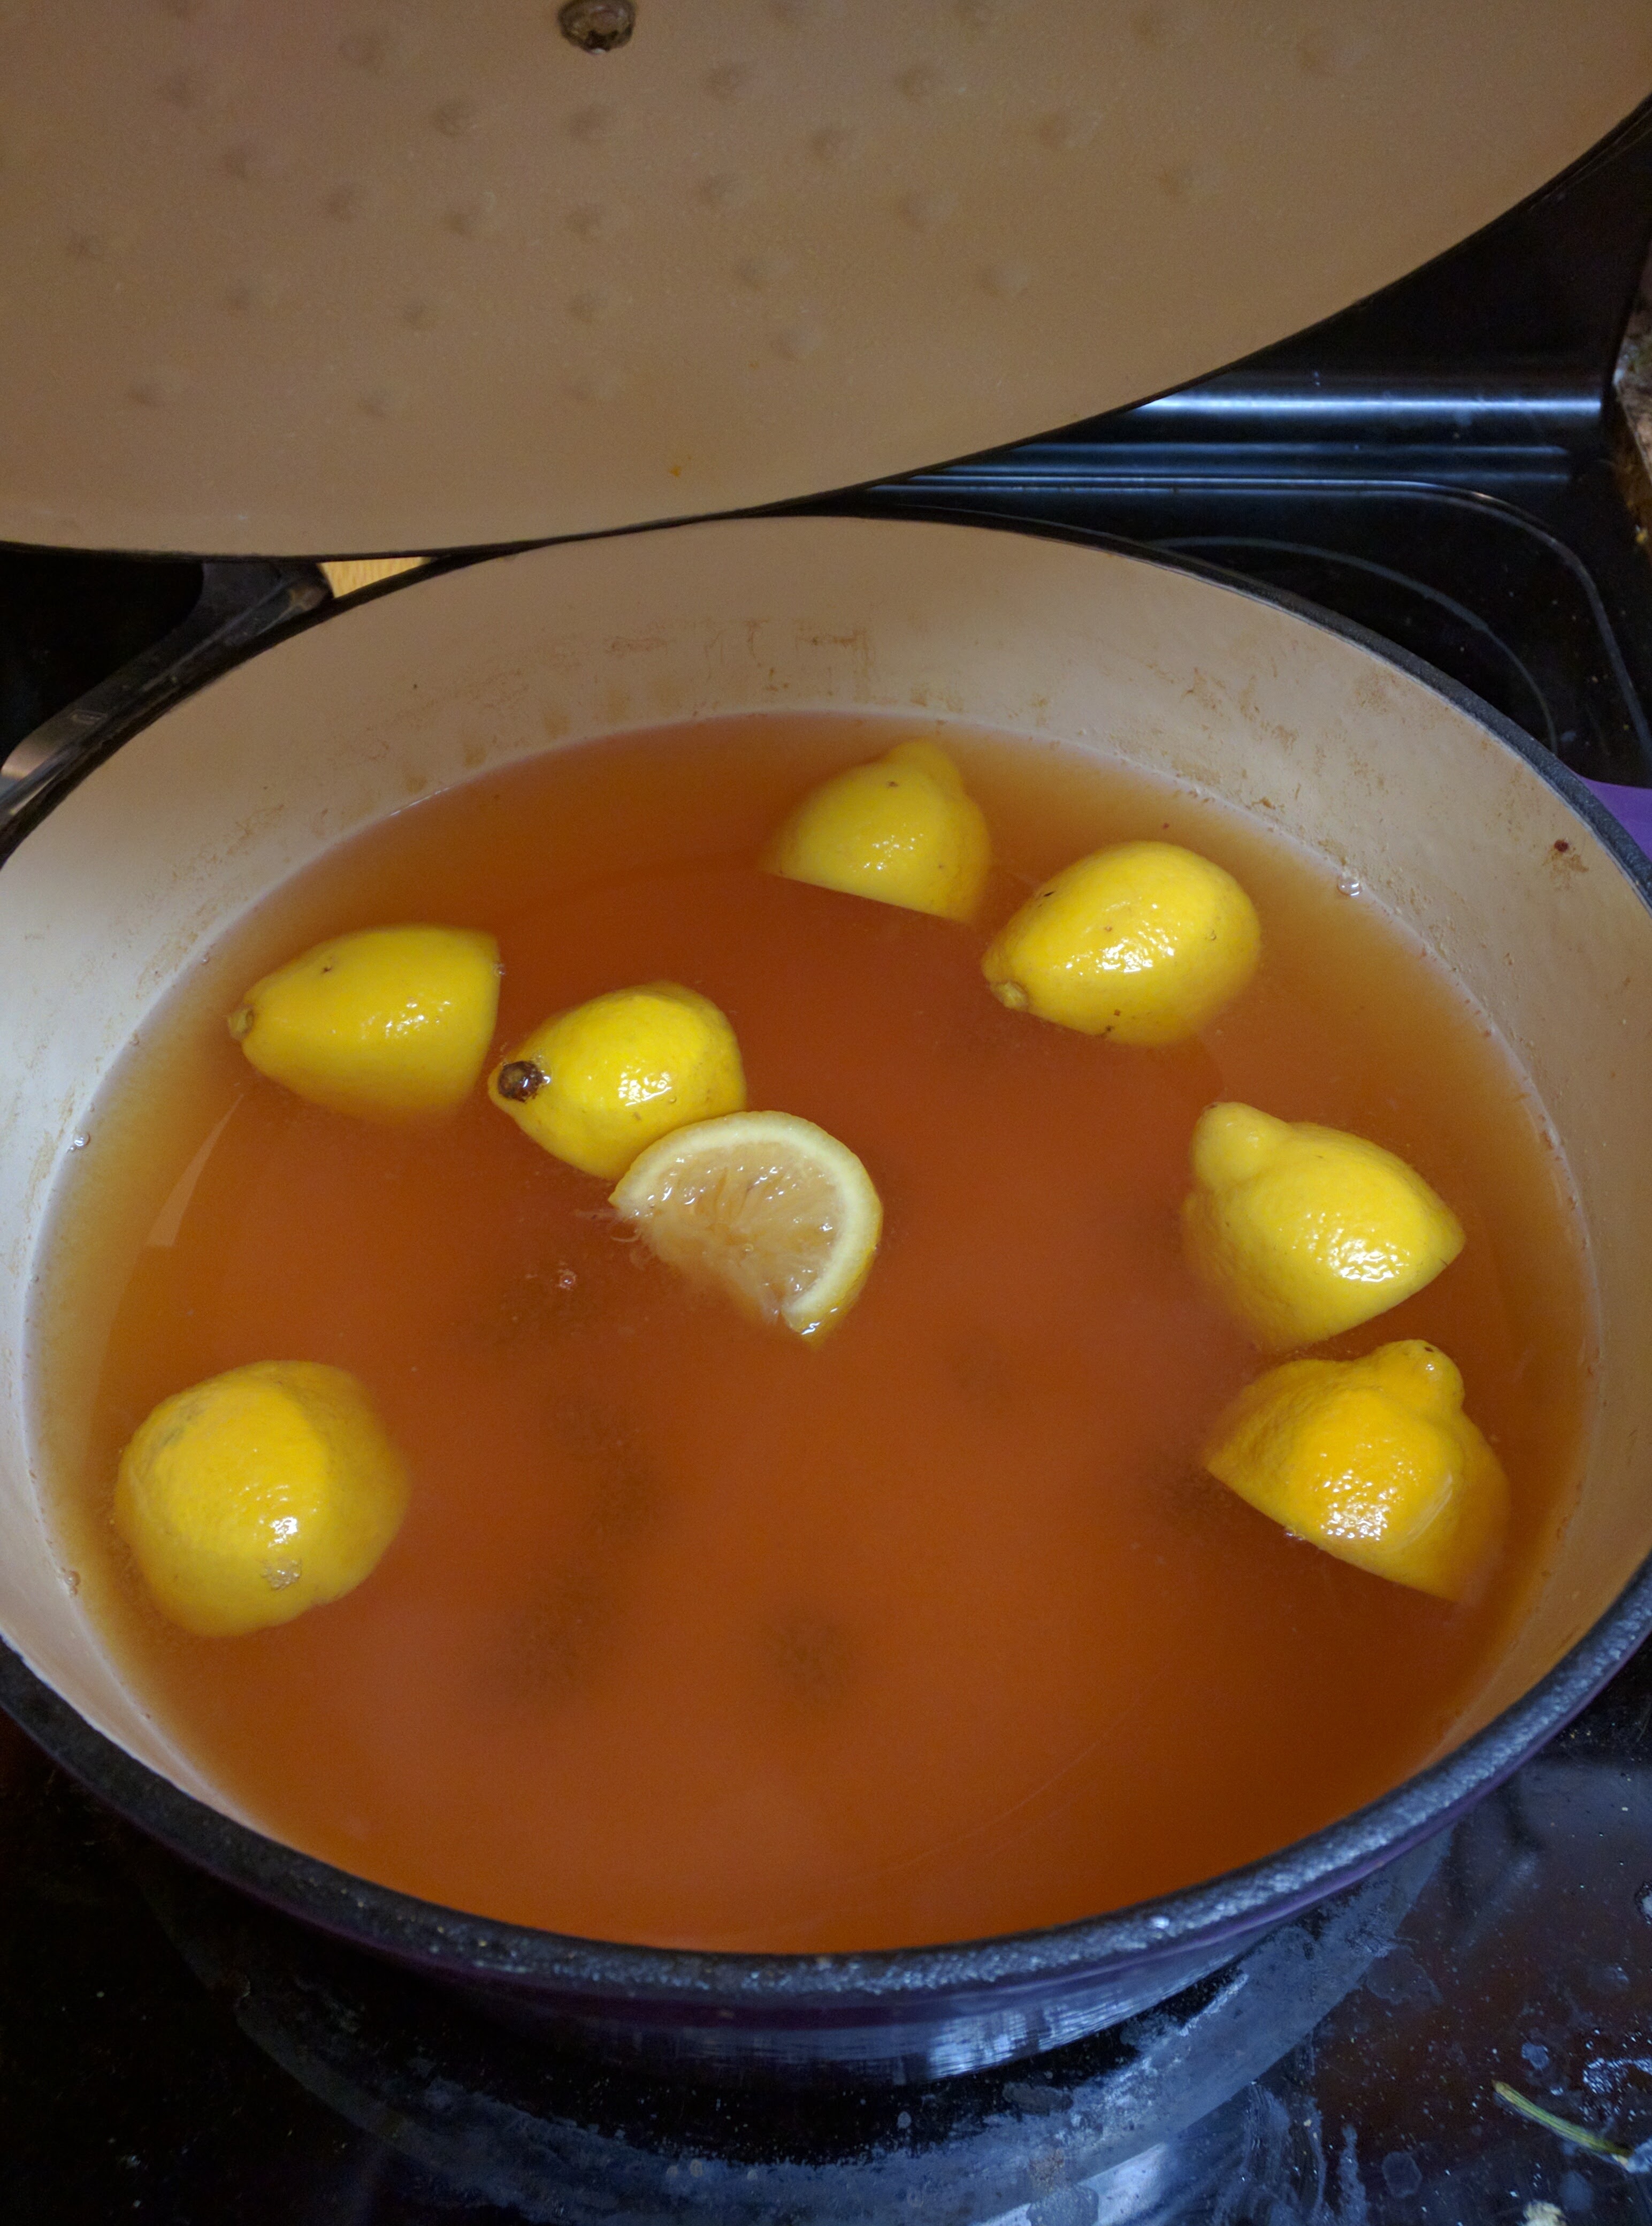 Lemons in the honey!